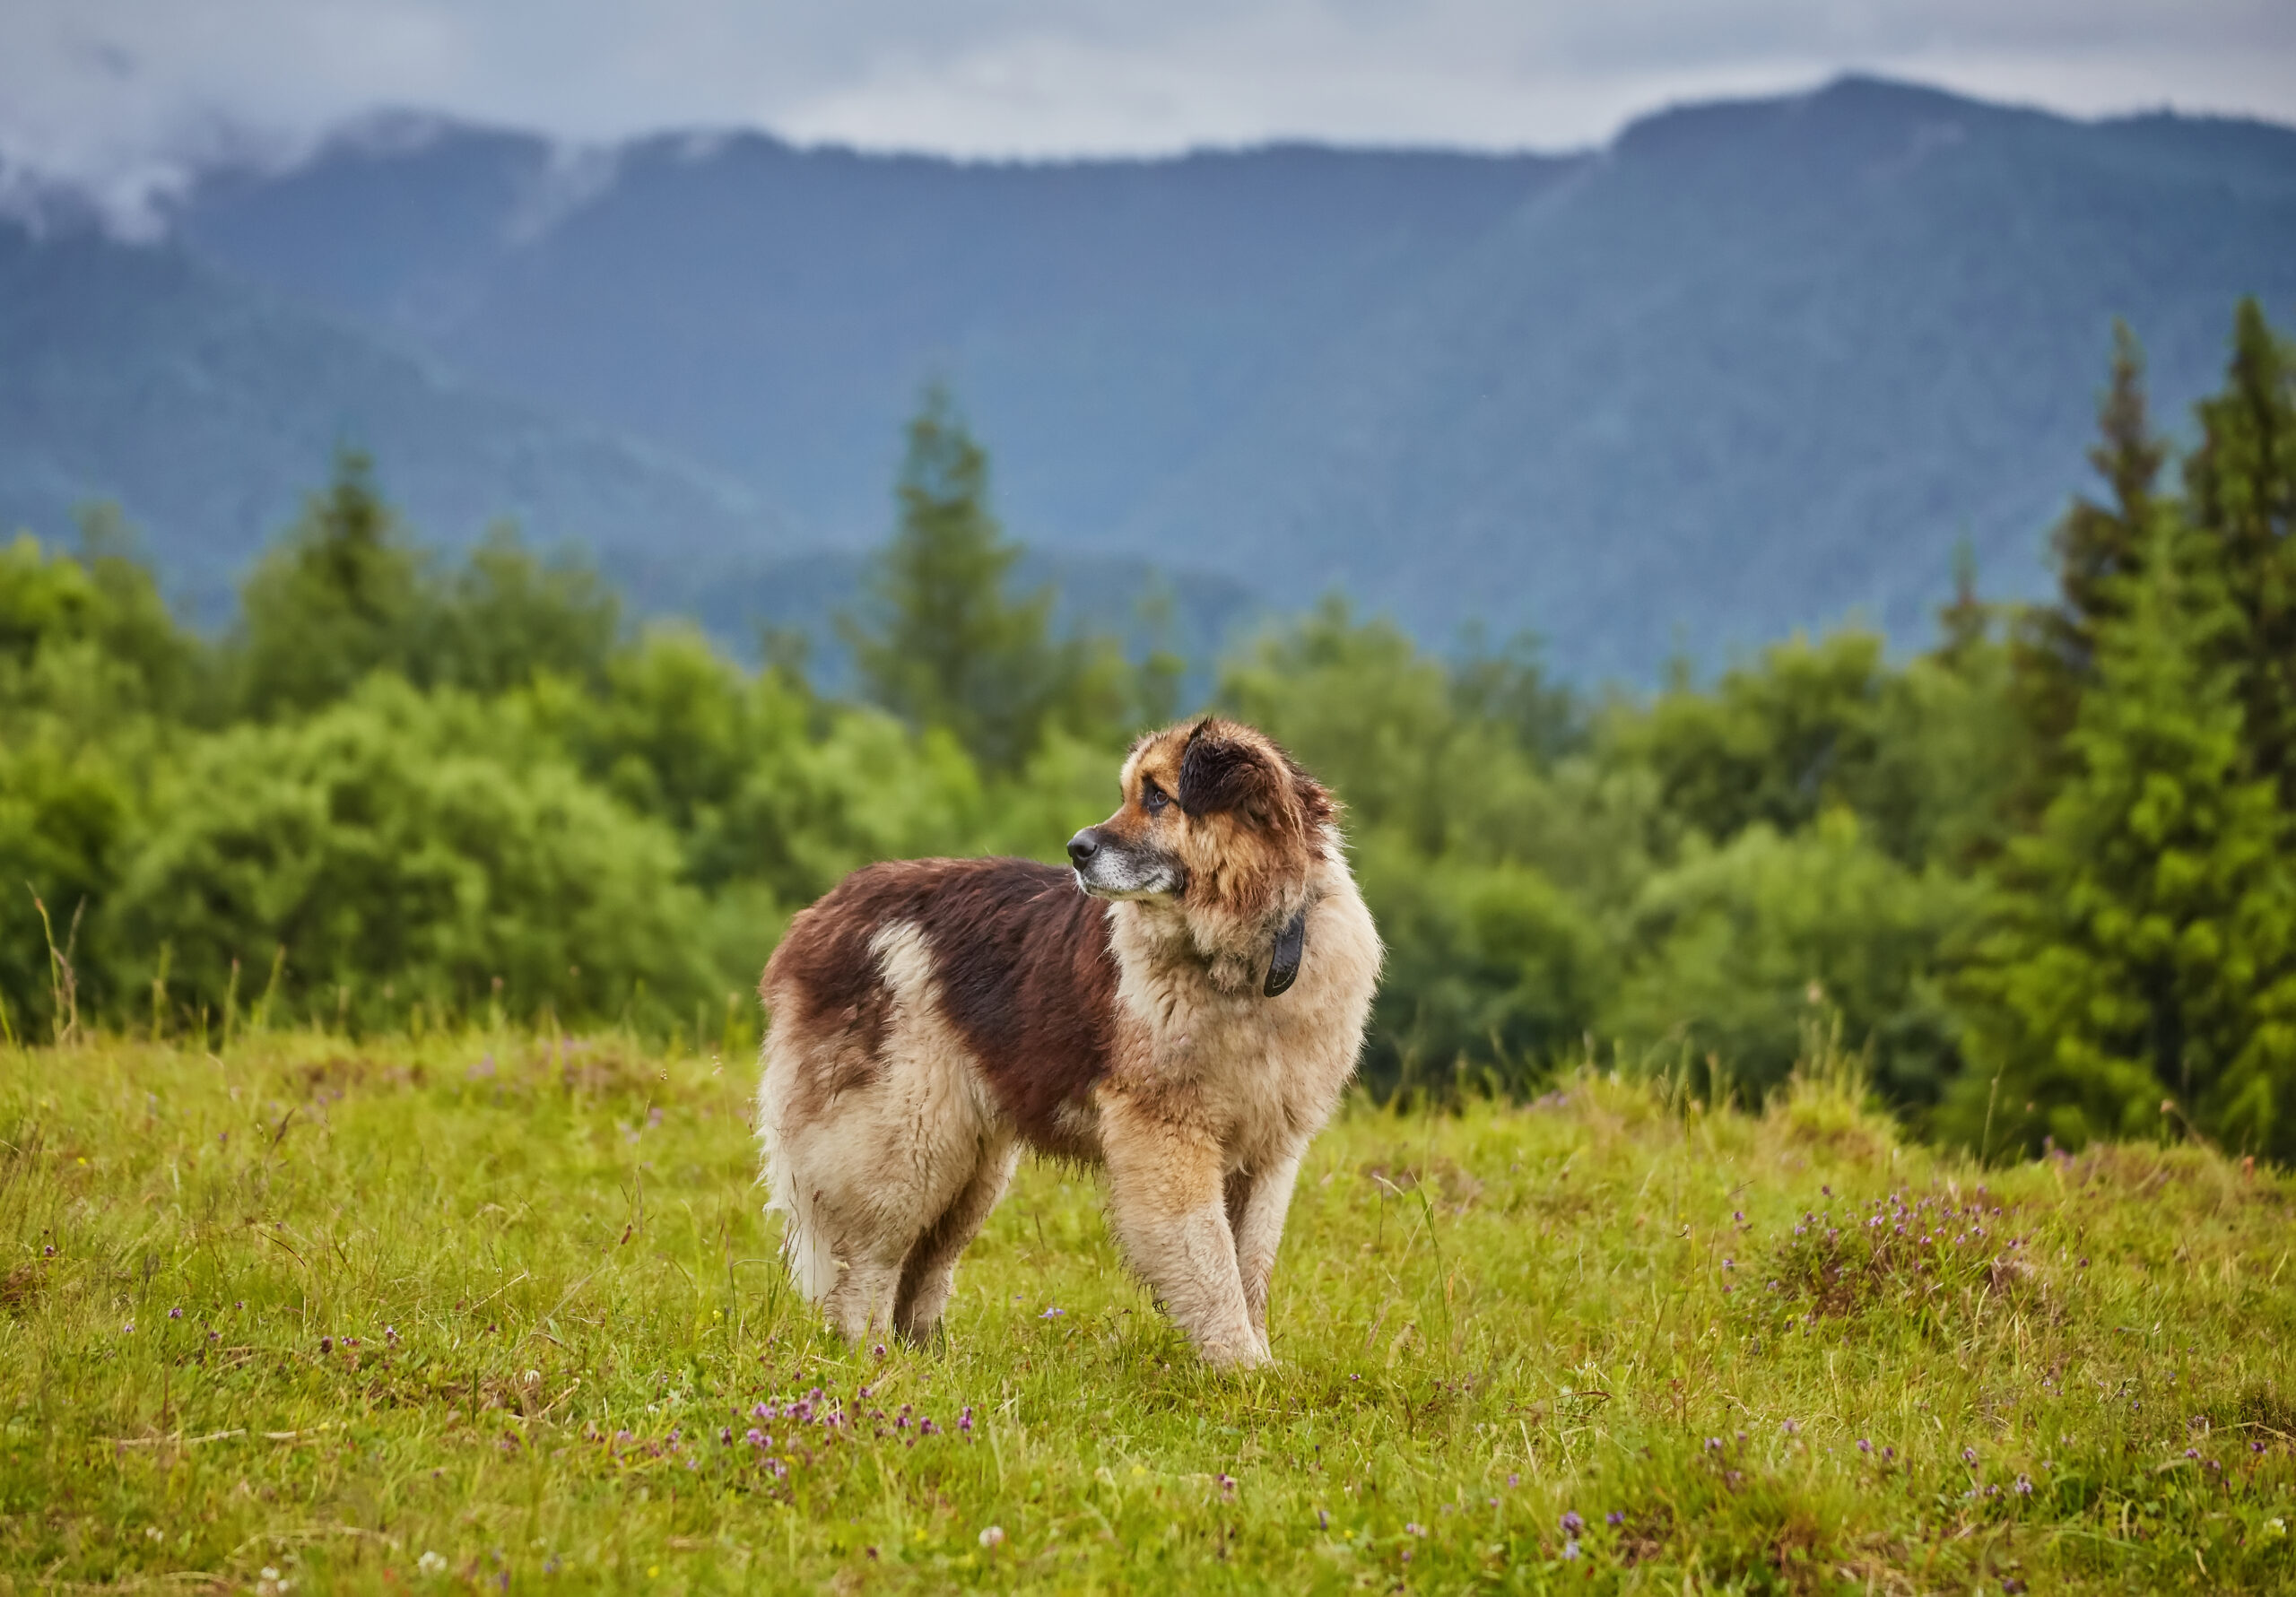 cane da pastore rumeno in piedi sul prato naturale, immagine scattata vicino all'allevamento di pecore